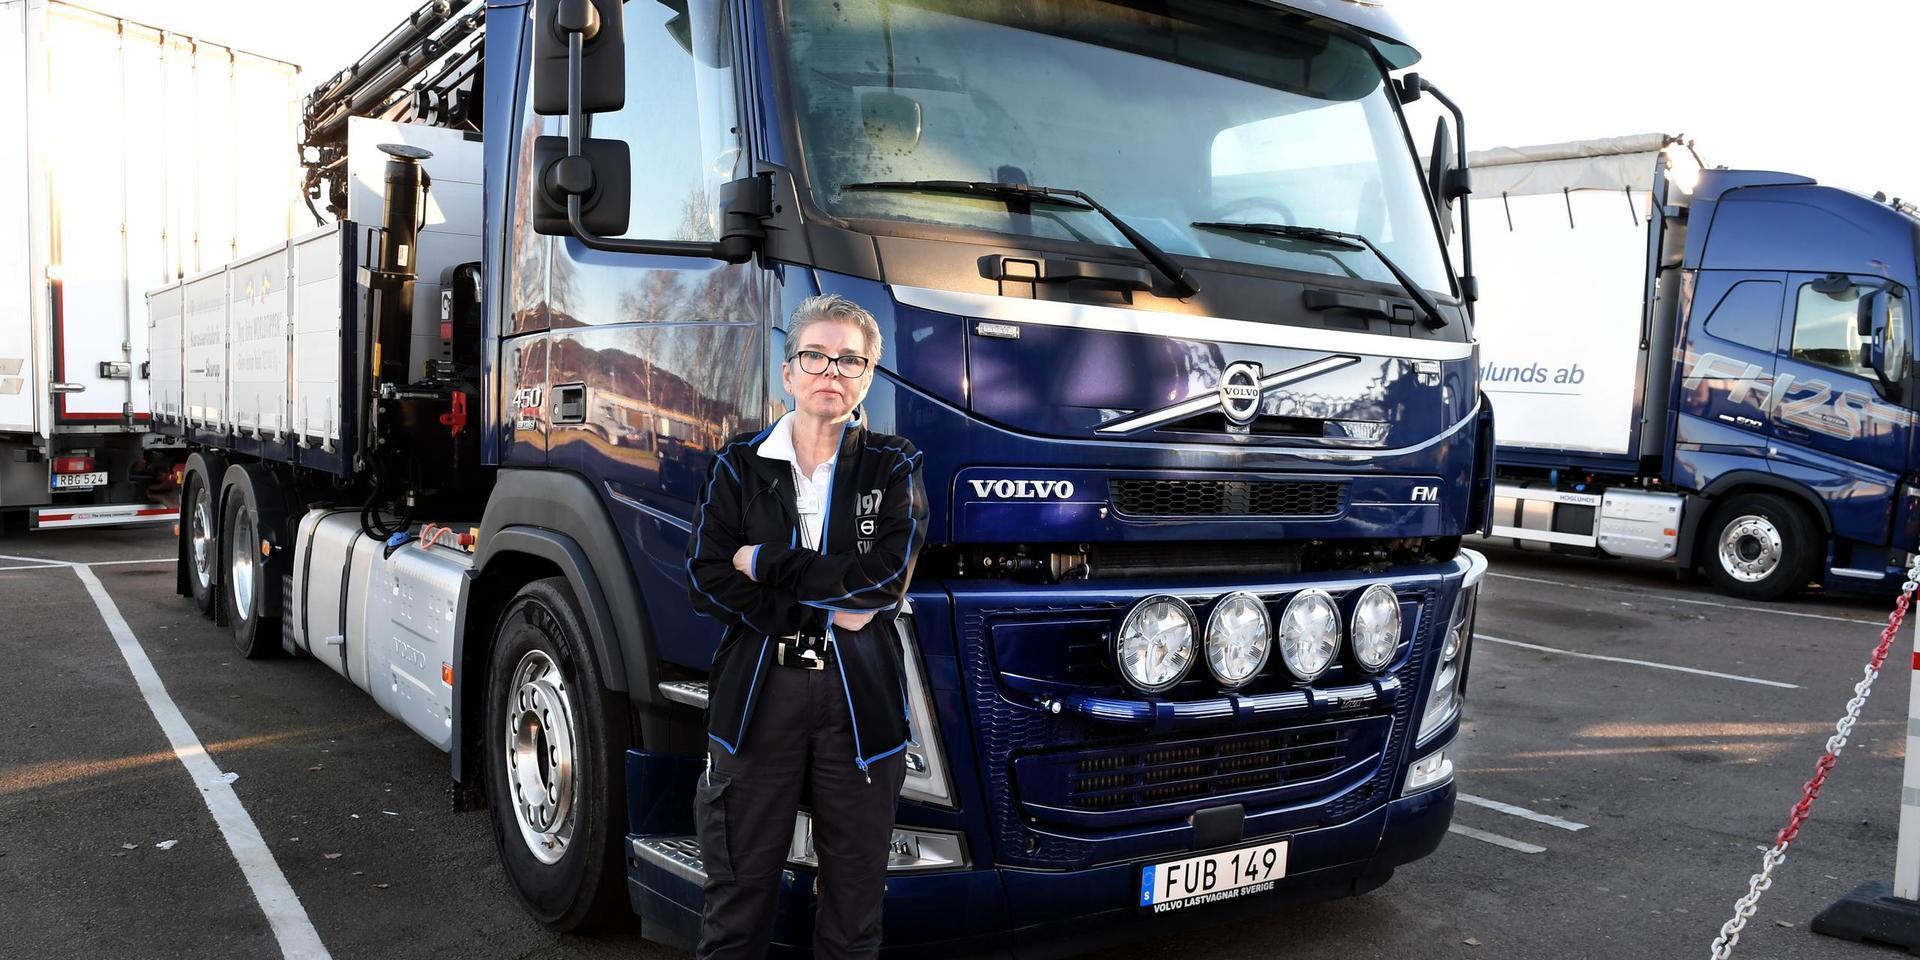 Söker du en reservdel till en gammal Volvolastbil? Då är det Britt-Marie Högberg på Volvo Truck Center i Bäckebol du ska vända dig till. Efter över 40 år som reservdelsman sitter hon inne med unik erfarenhet och kunskap om reservdelar till gamla Volvolastbilar och var man kan hitta dem.